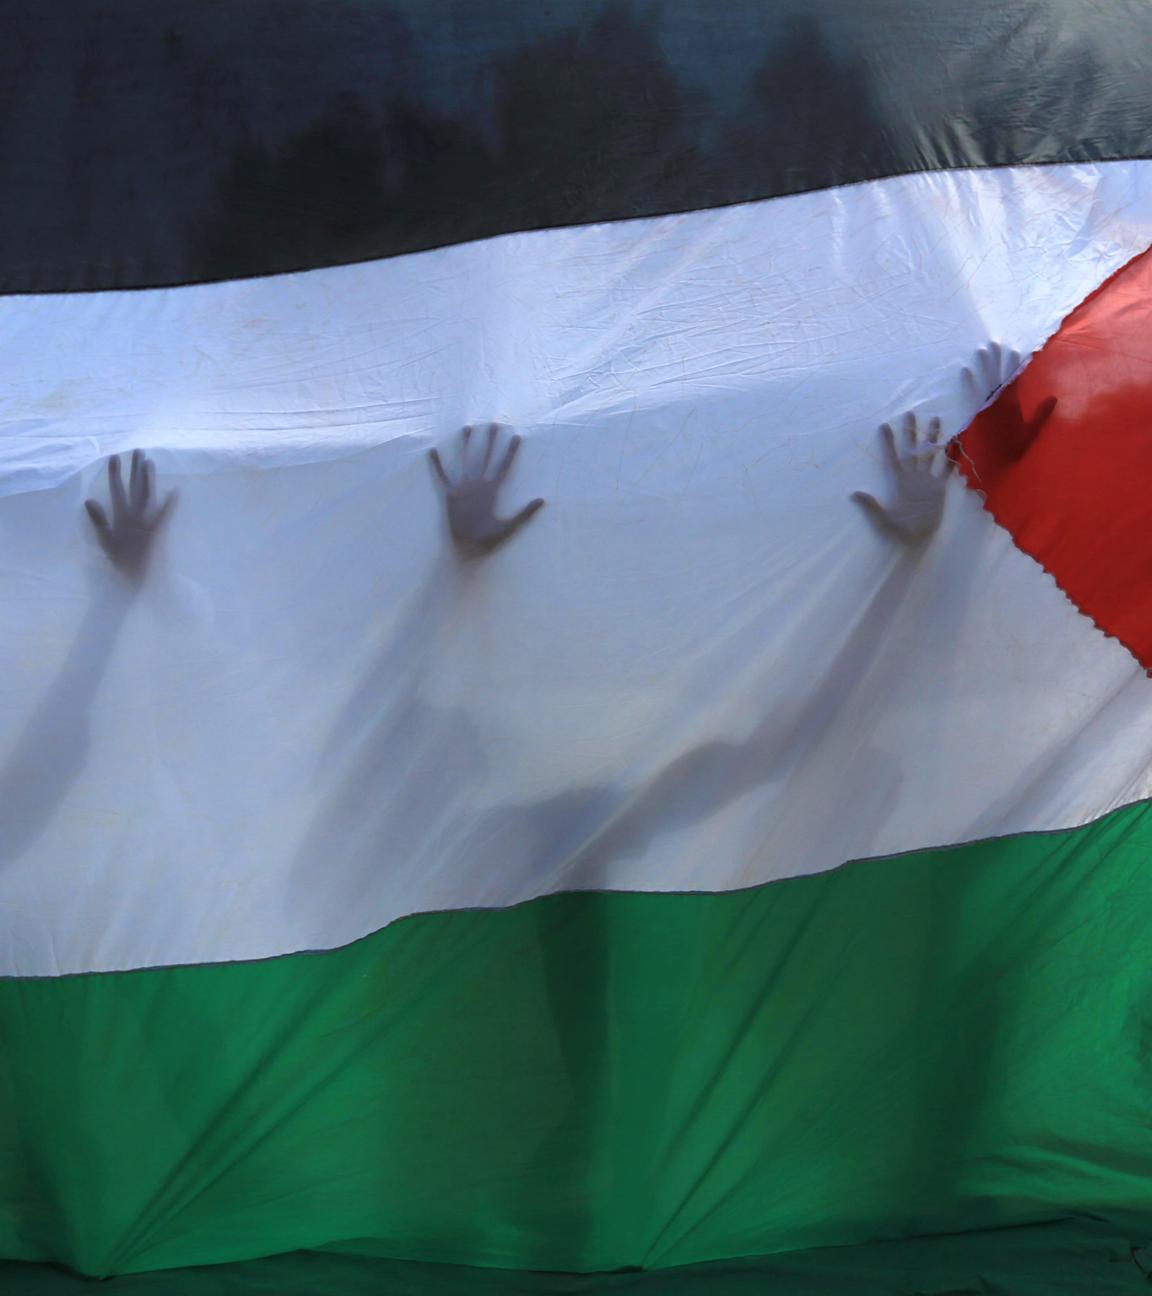  Palästinensische Gebiete, Khan Yunis: Palästinensische Freiwillige stehen hinter einer palästinensischen Fahne, durch die ihre Silhouetten zu erkennen sind.